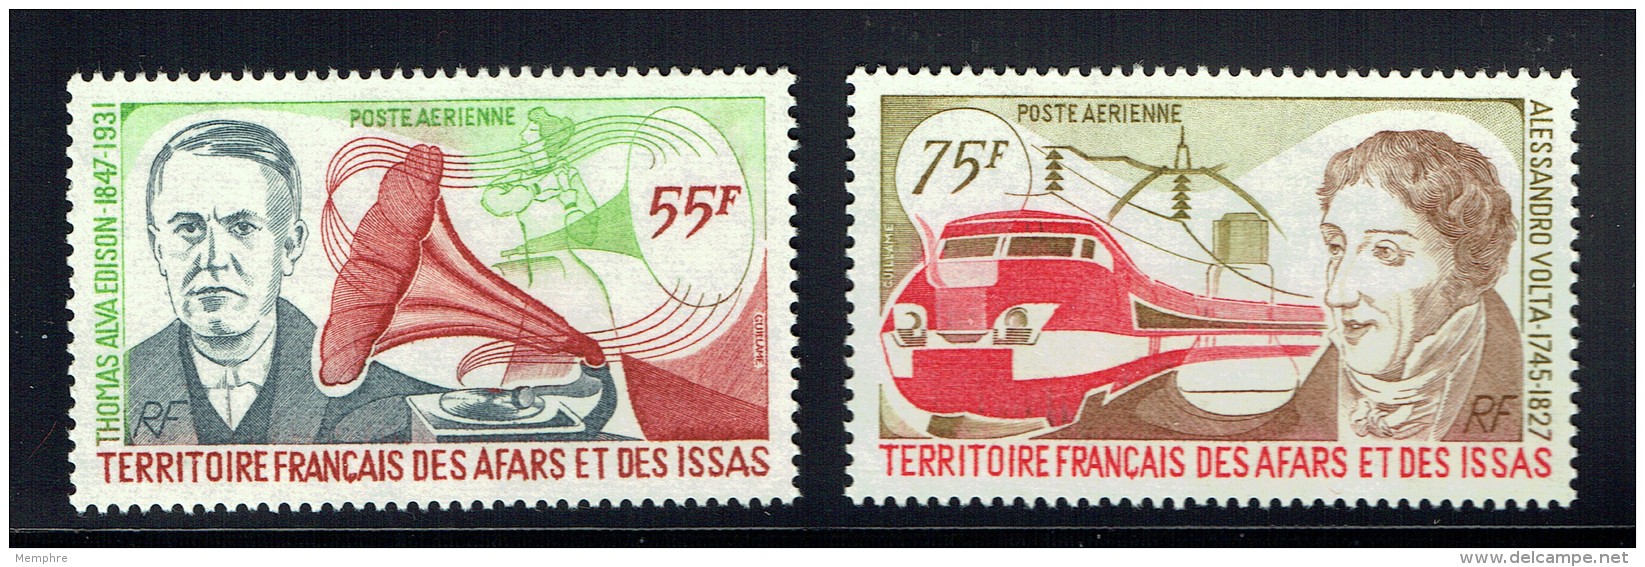 1977  Edison Et Grammophone, Volta Et Train électrique  Yv 110-1  ** - Unused Stamps